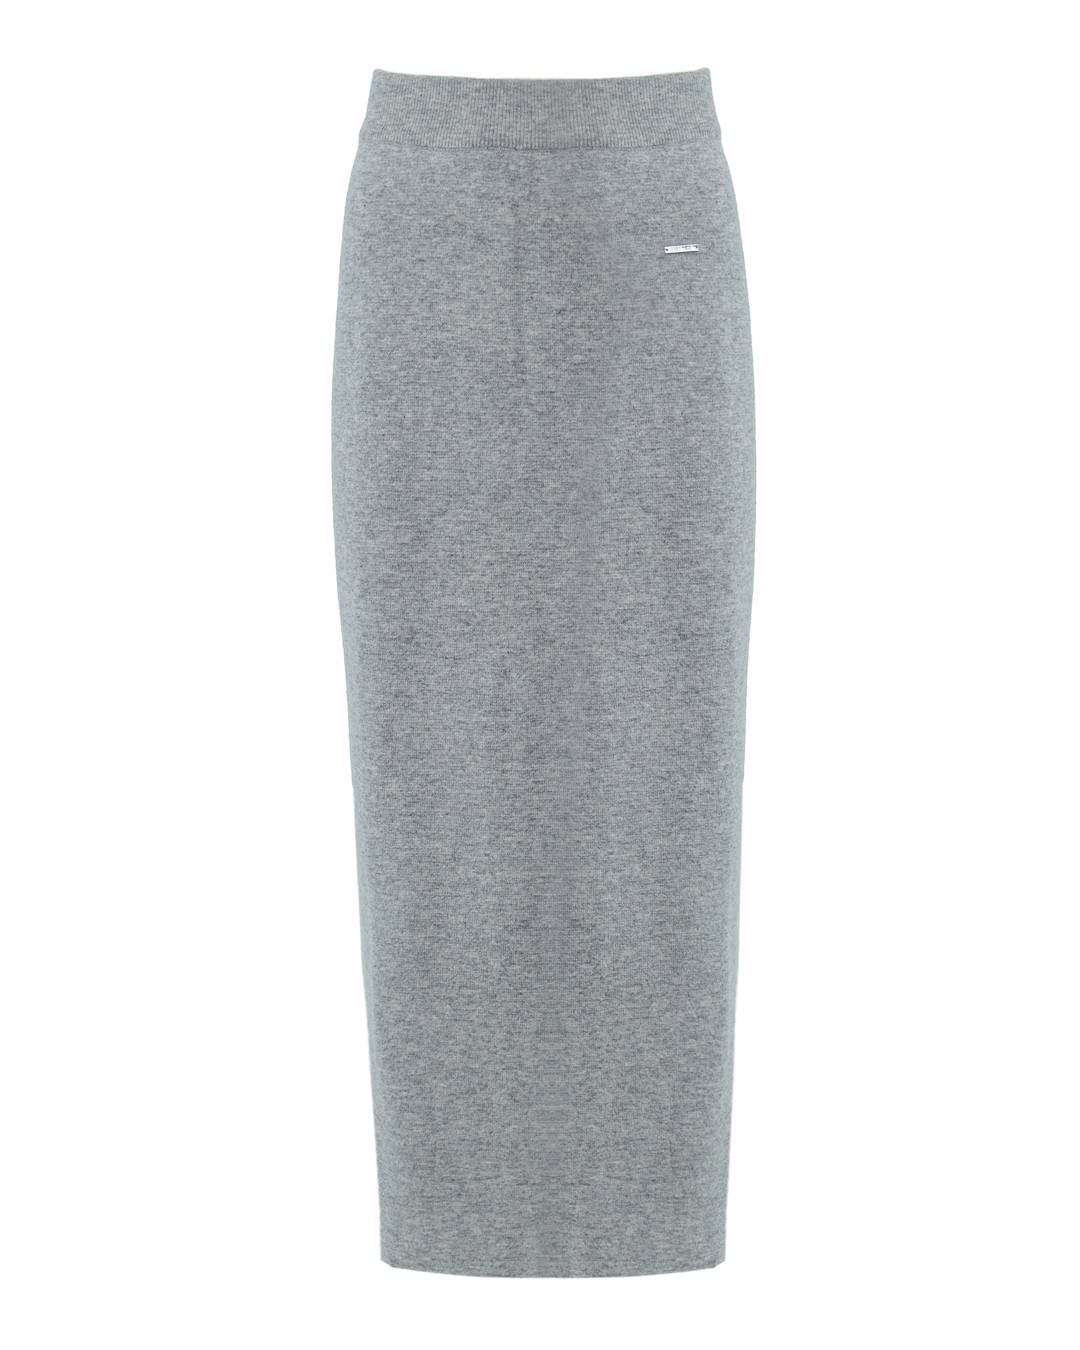 юбка FREE AGE. 50016-MG серый s, размер s - фото 1